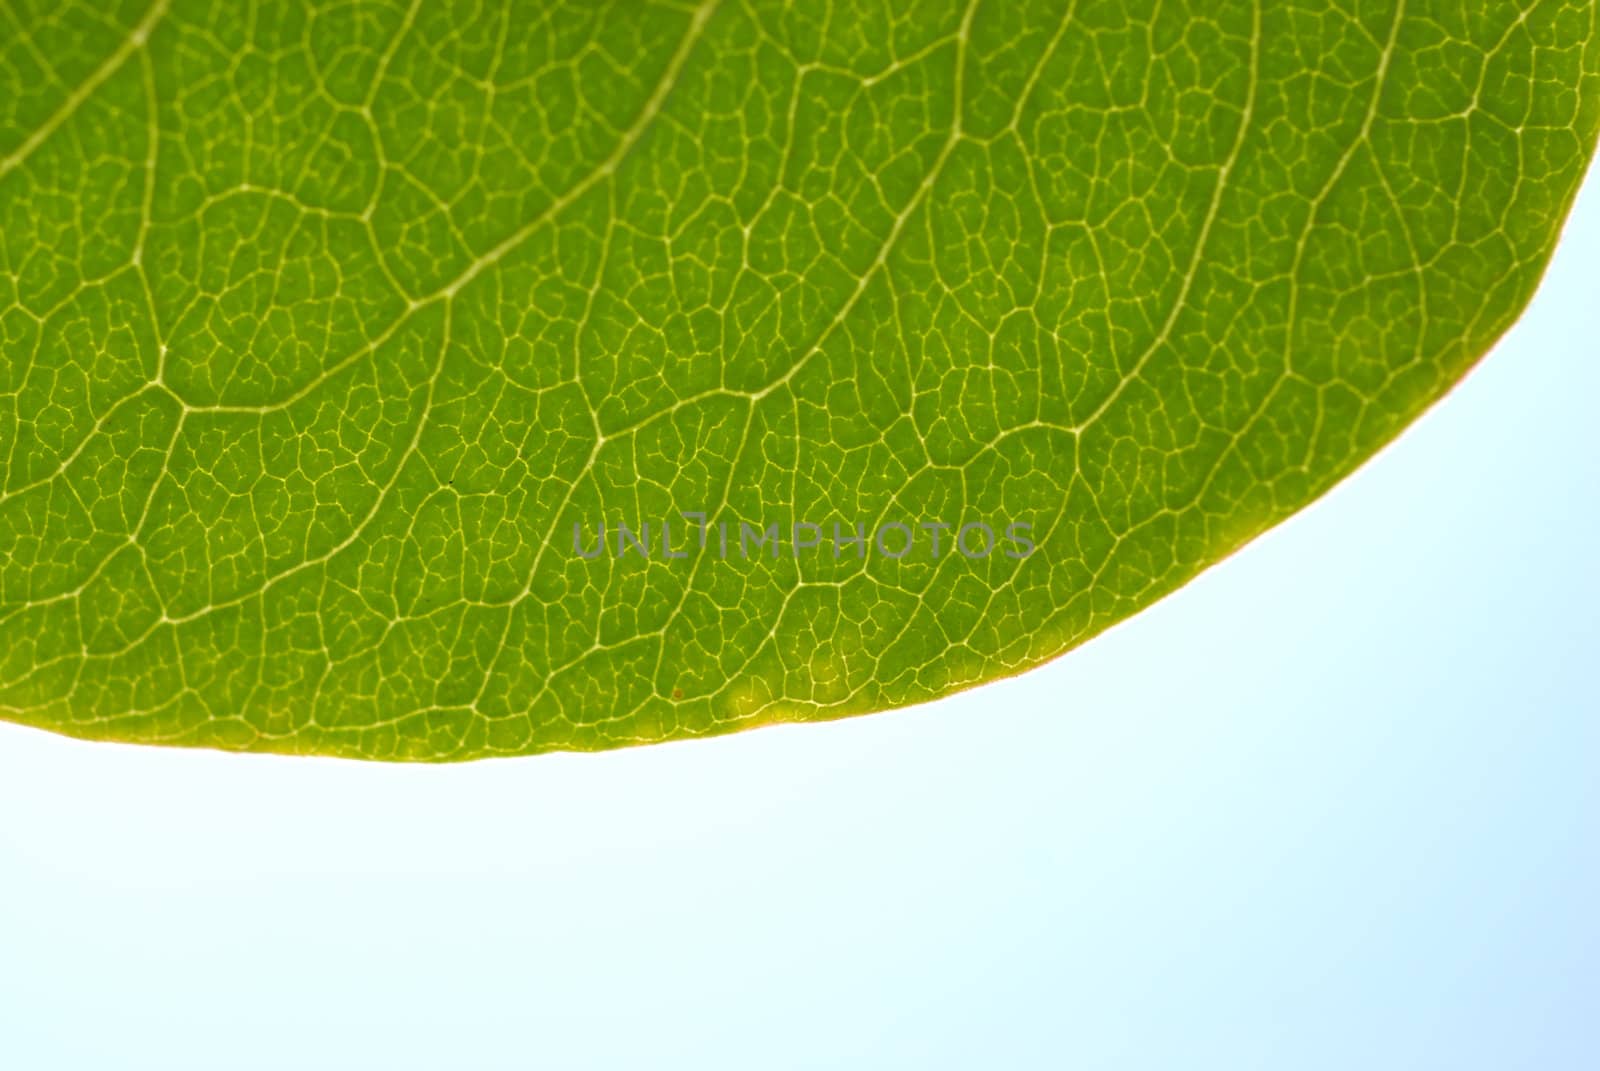 Hanging leaf, texture. by wojciechkozlowski